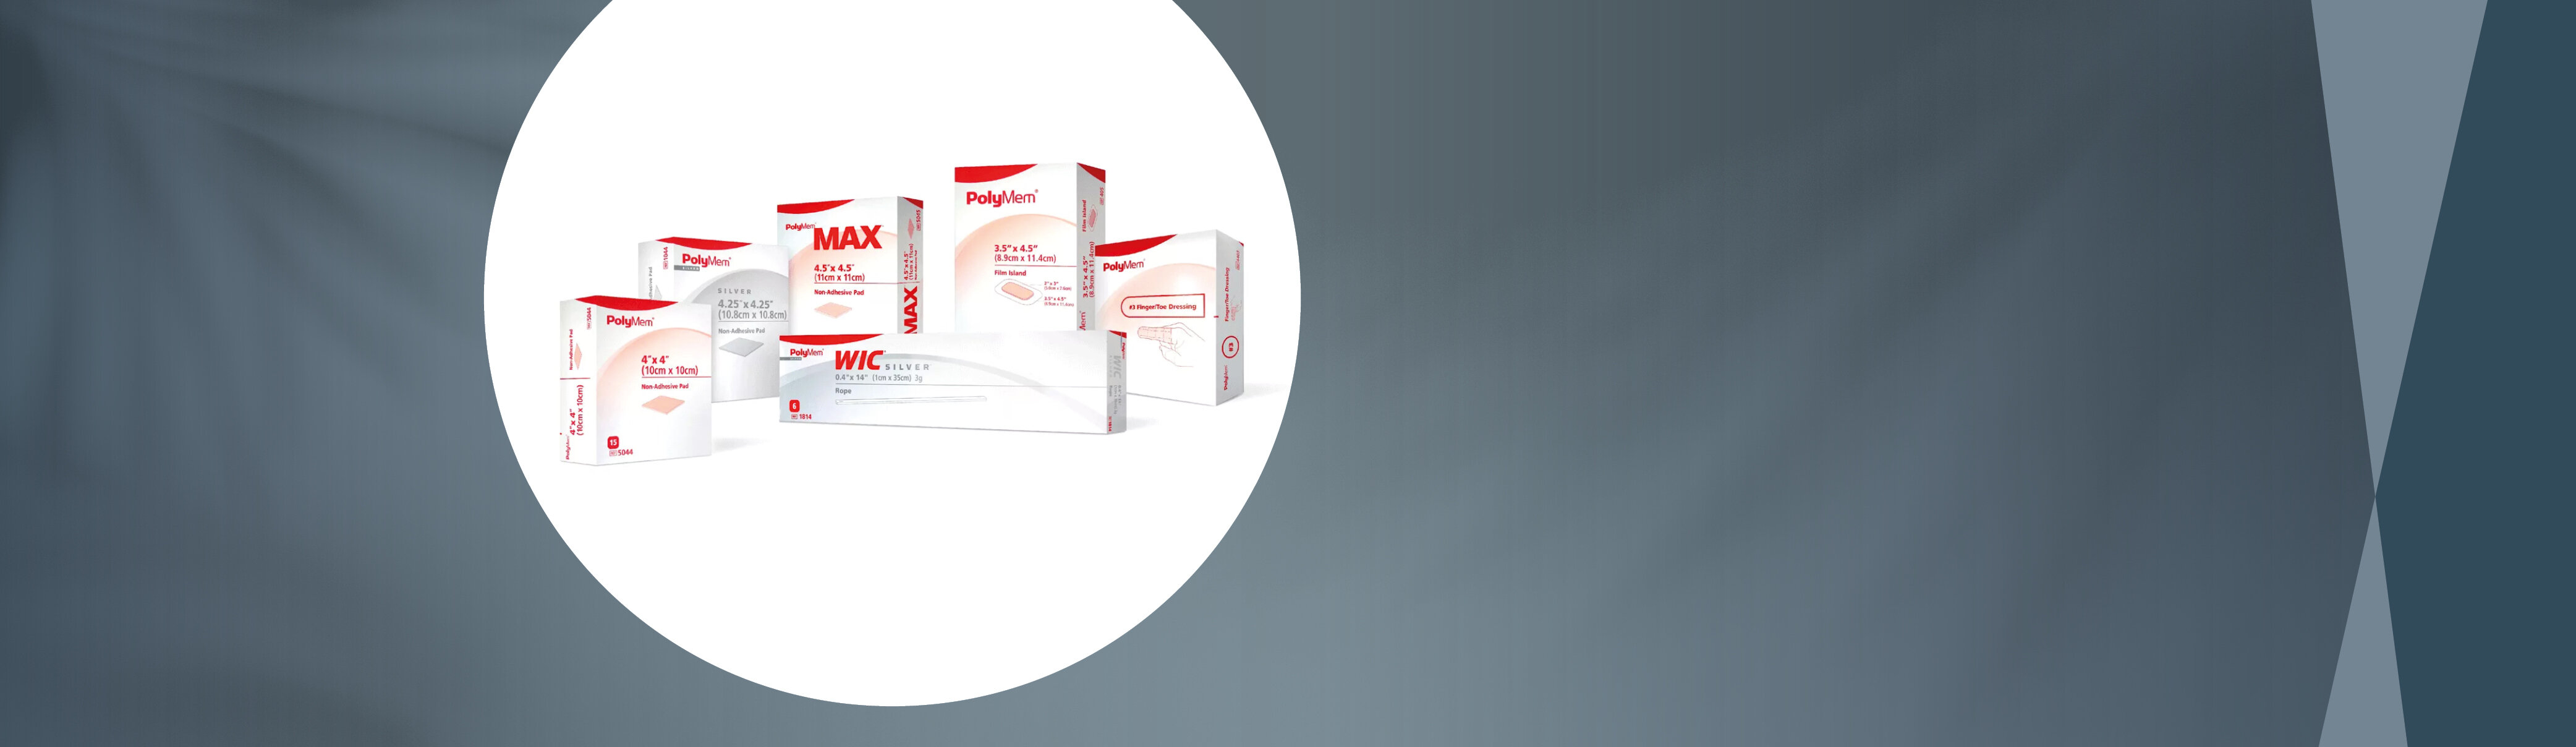 Im Fokus verschiedene Verpackungsgrößen des Produktes PolyMem® von mediset clinical products, stehend als Gruppe.